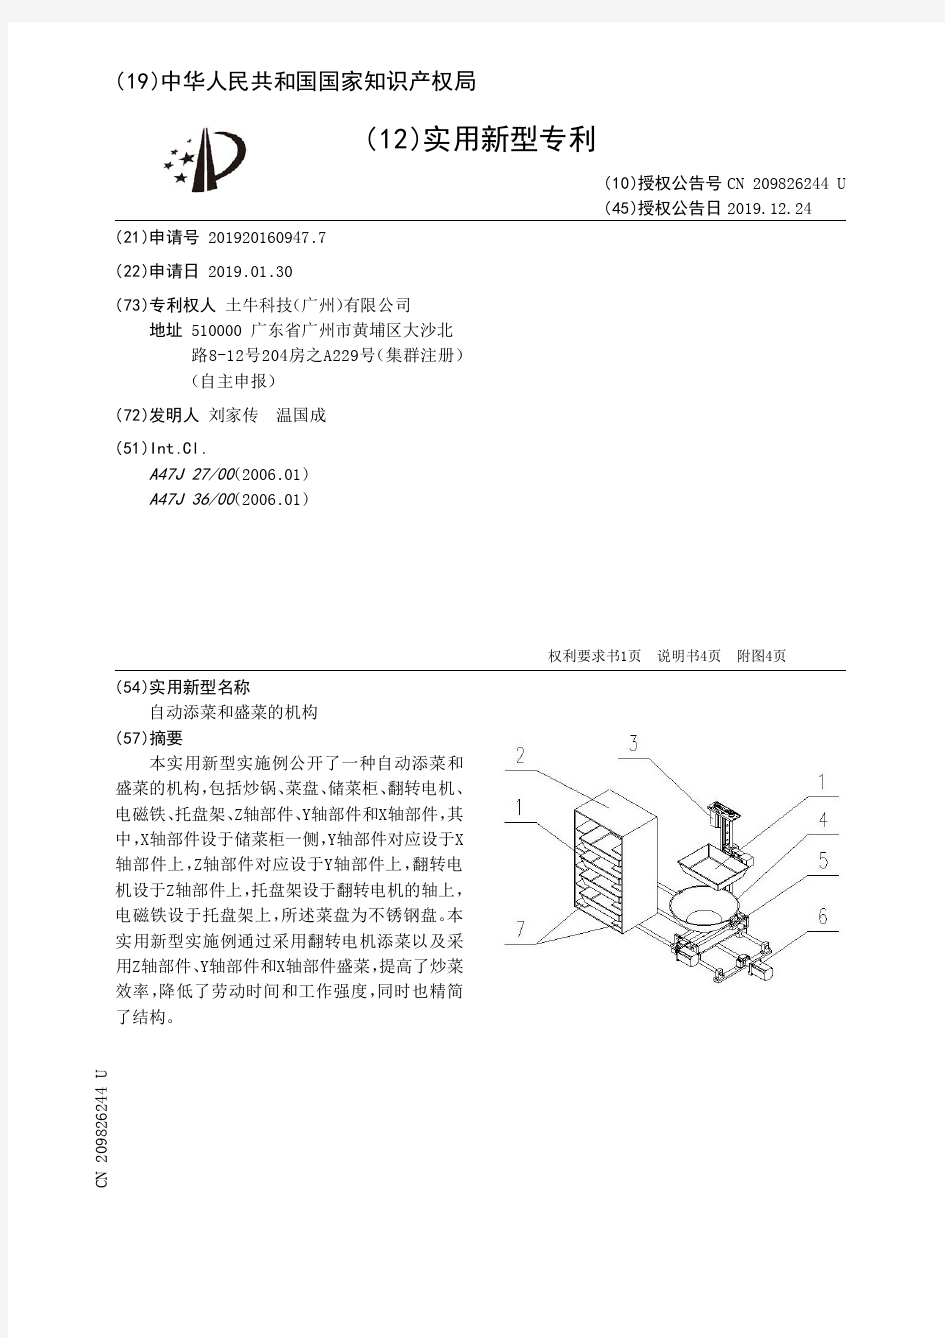 【CN209826244U】自动添菜和盛菜的机构【专利】